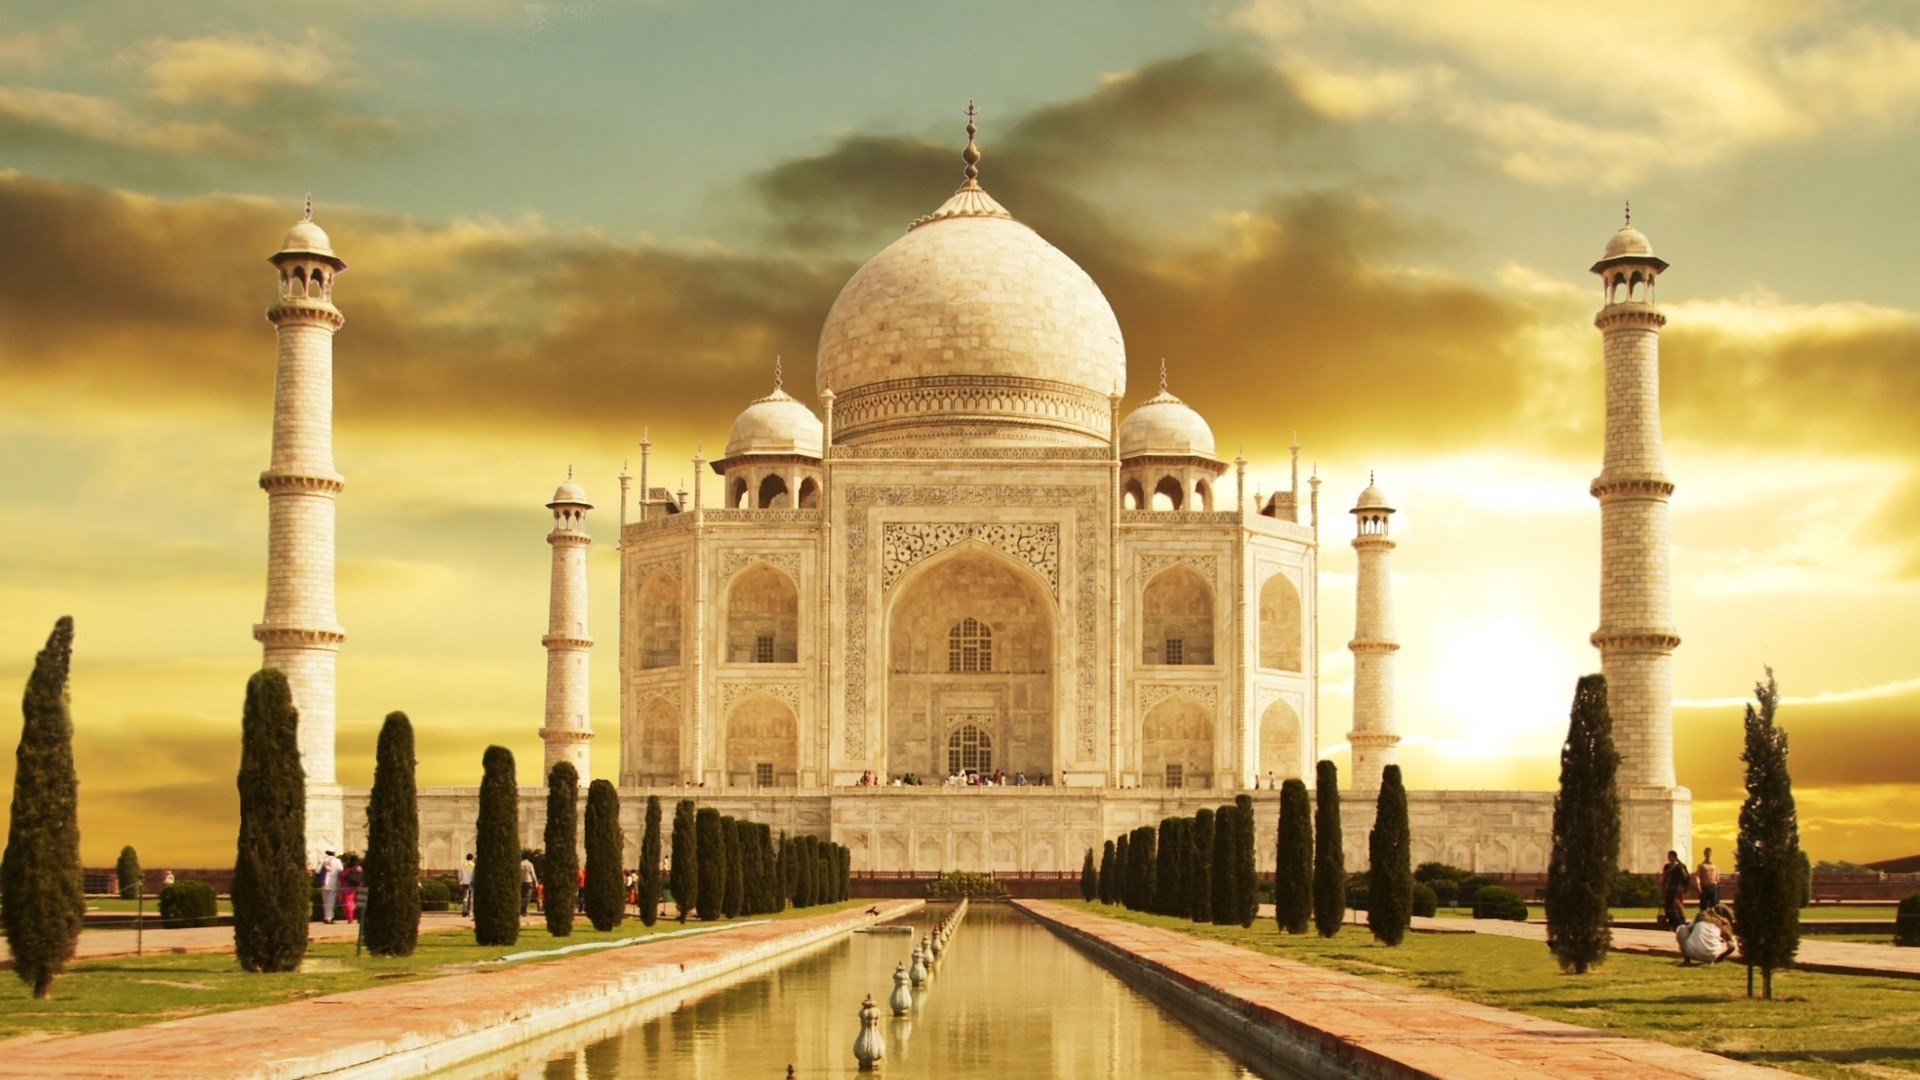 Descargar fondos de escritorio de Taj Mahal HD